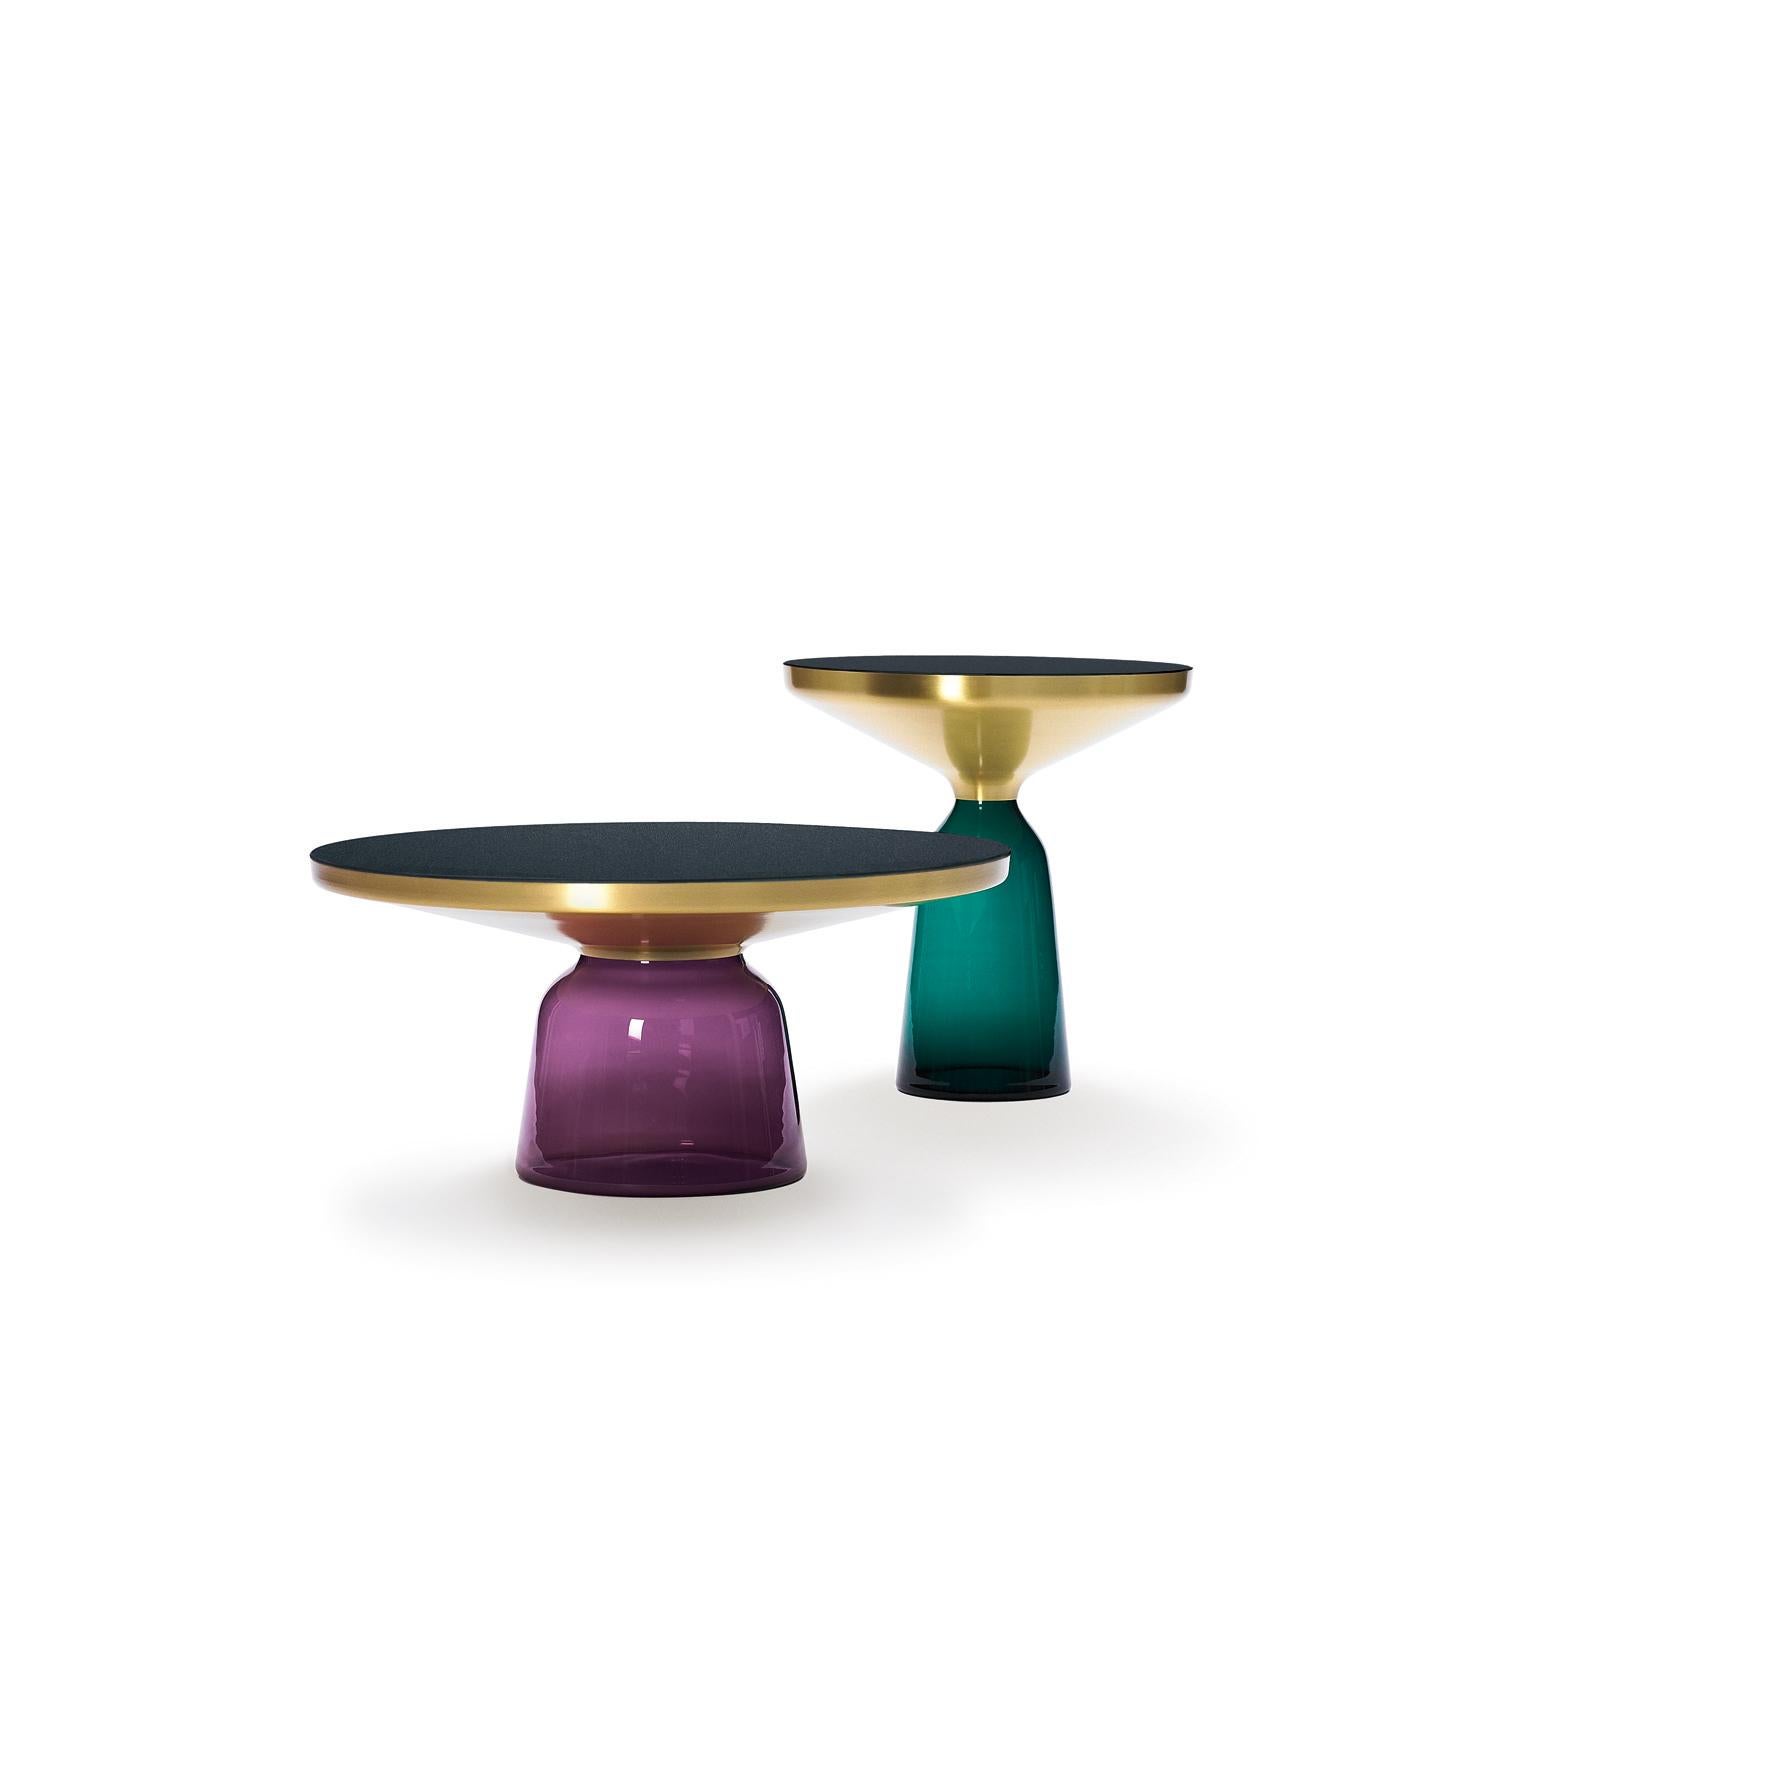 Der Tisch Bell von Sebastian Herkner stellt unsere Wahrnehmungsgewohnheiten auf den Kopf, indem er das leichte, zerbrechliche Material Glas als Basis für eine Metallplatte verwendet, die darüber zu schweben scheint. In traditioneller Weise mit einer